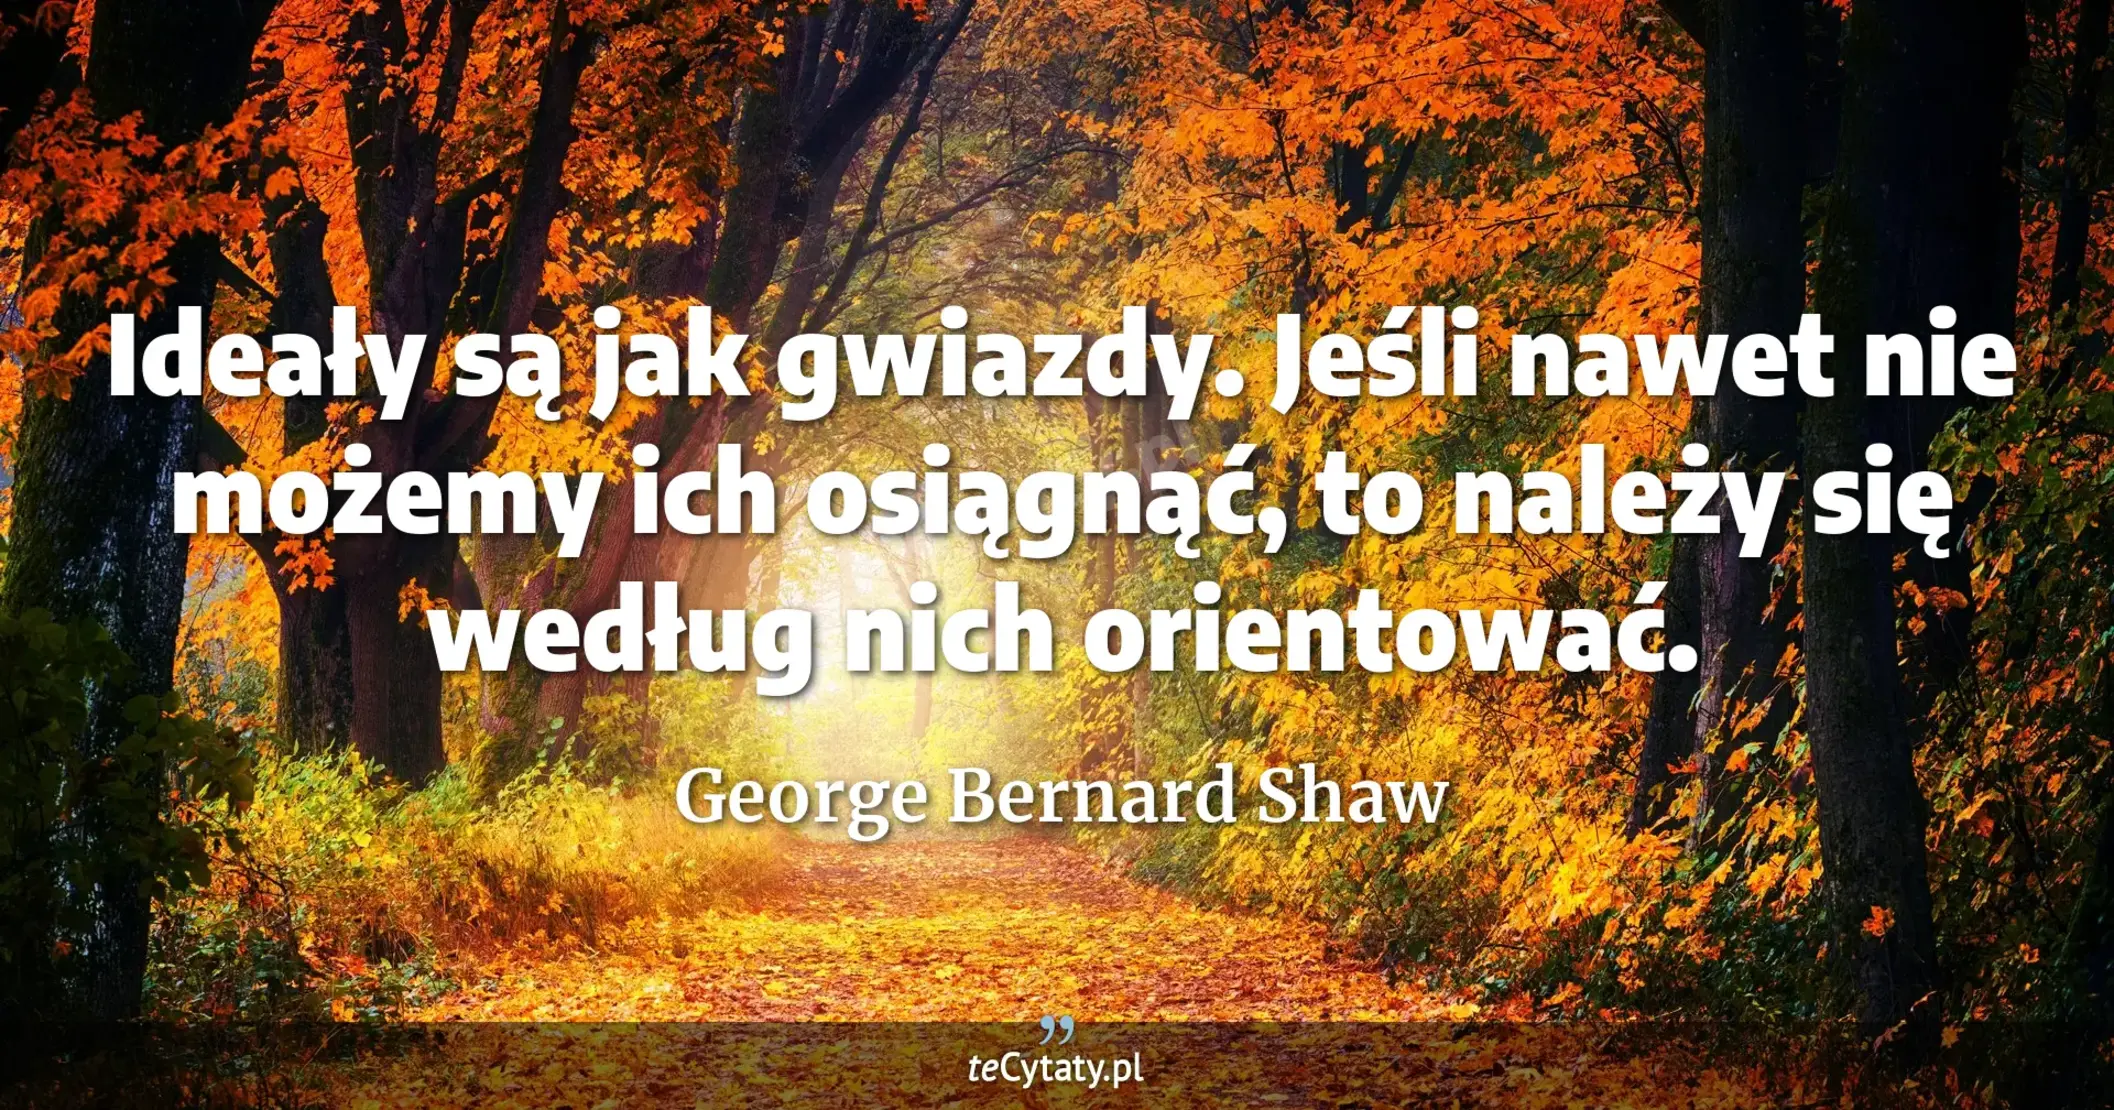 Ideały są jak gwiazdy. Jeśli nawet nie możemy ich osiągnąć, to należy się według nich orientować. - George Bernard Shaw